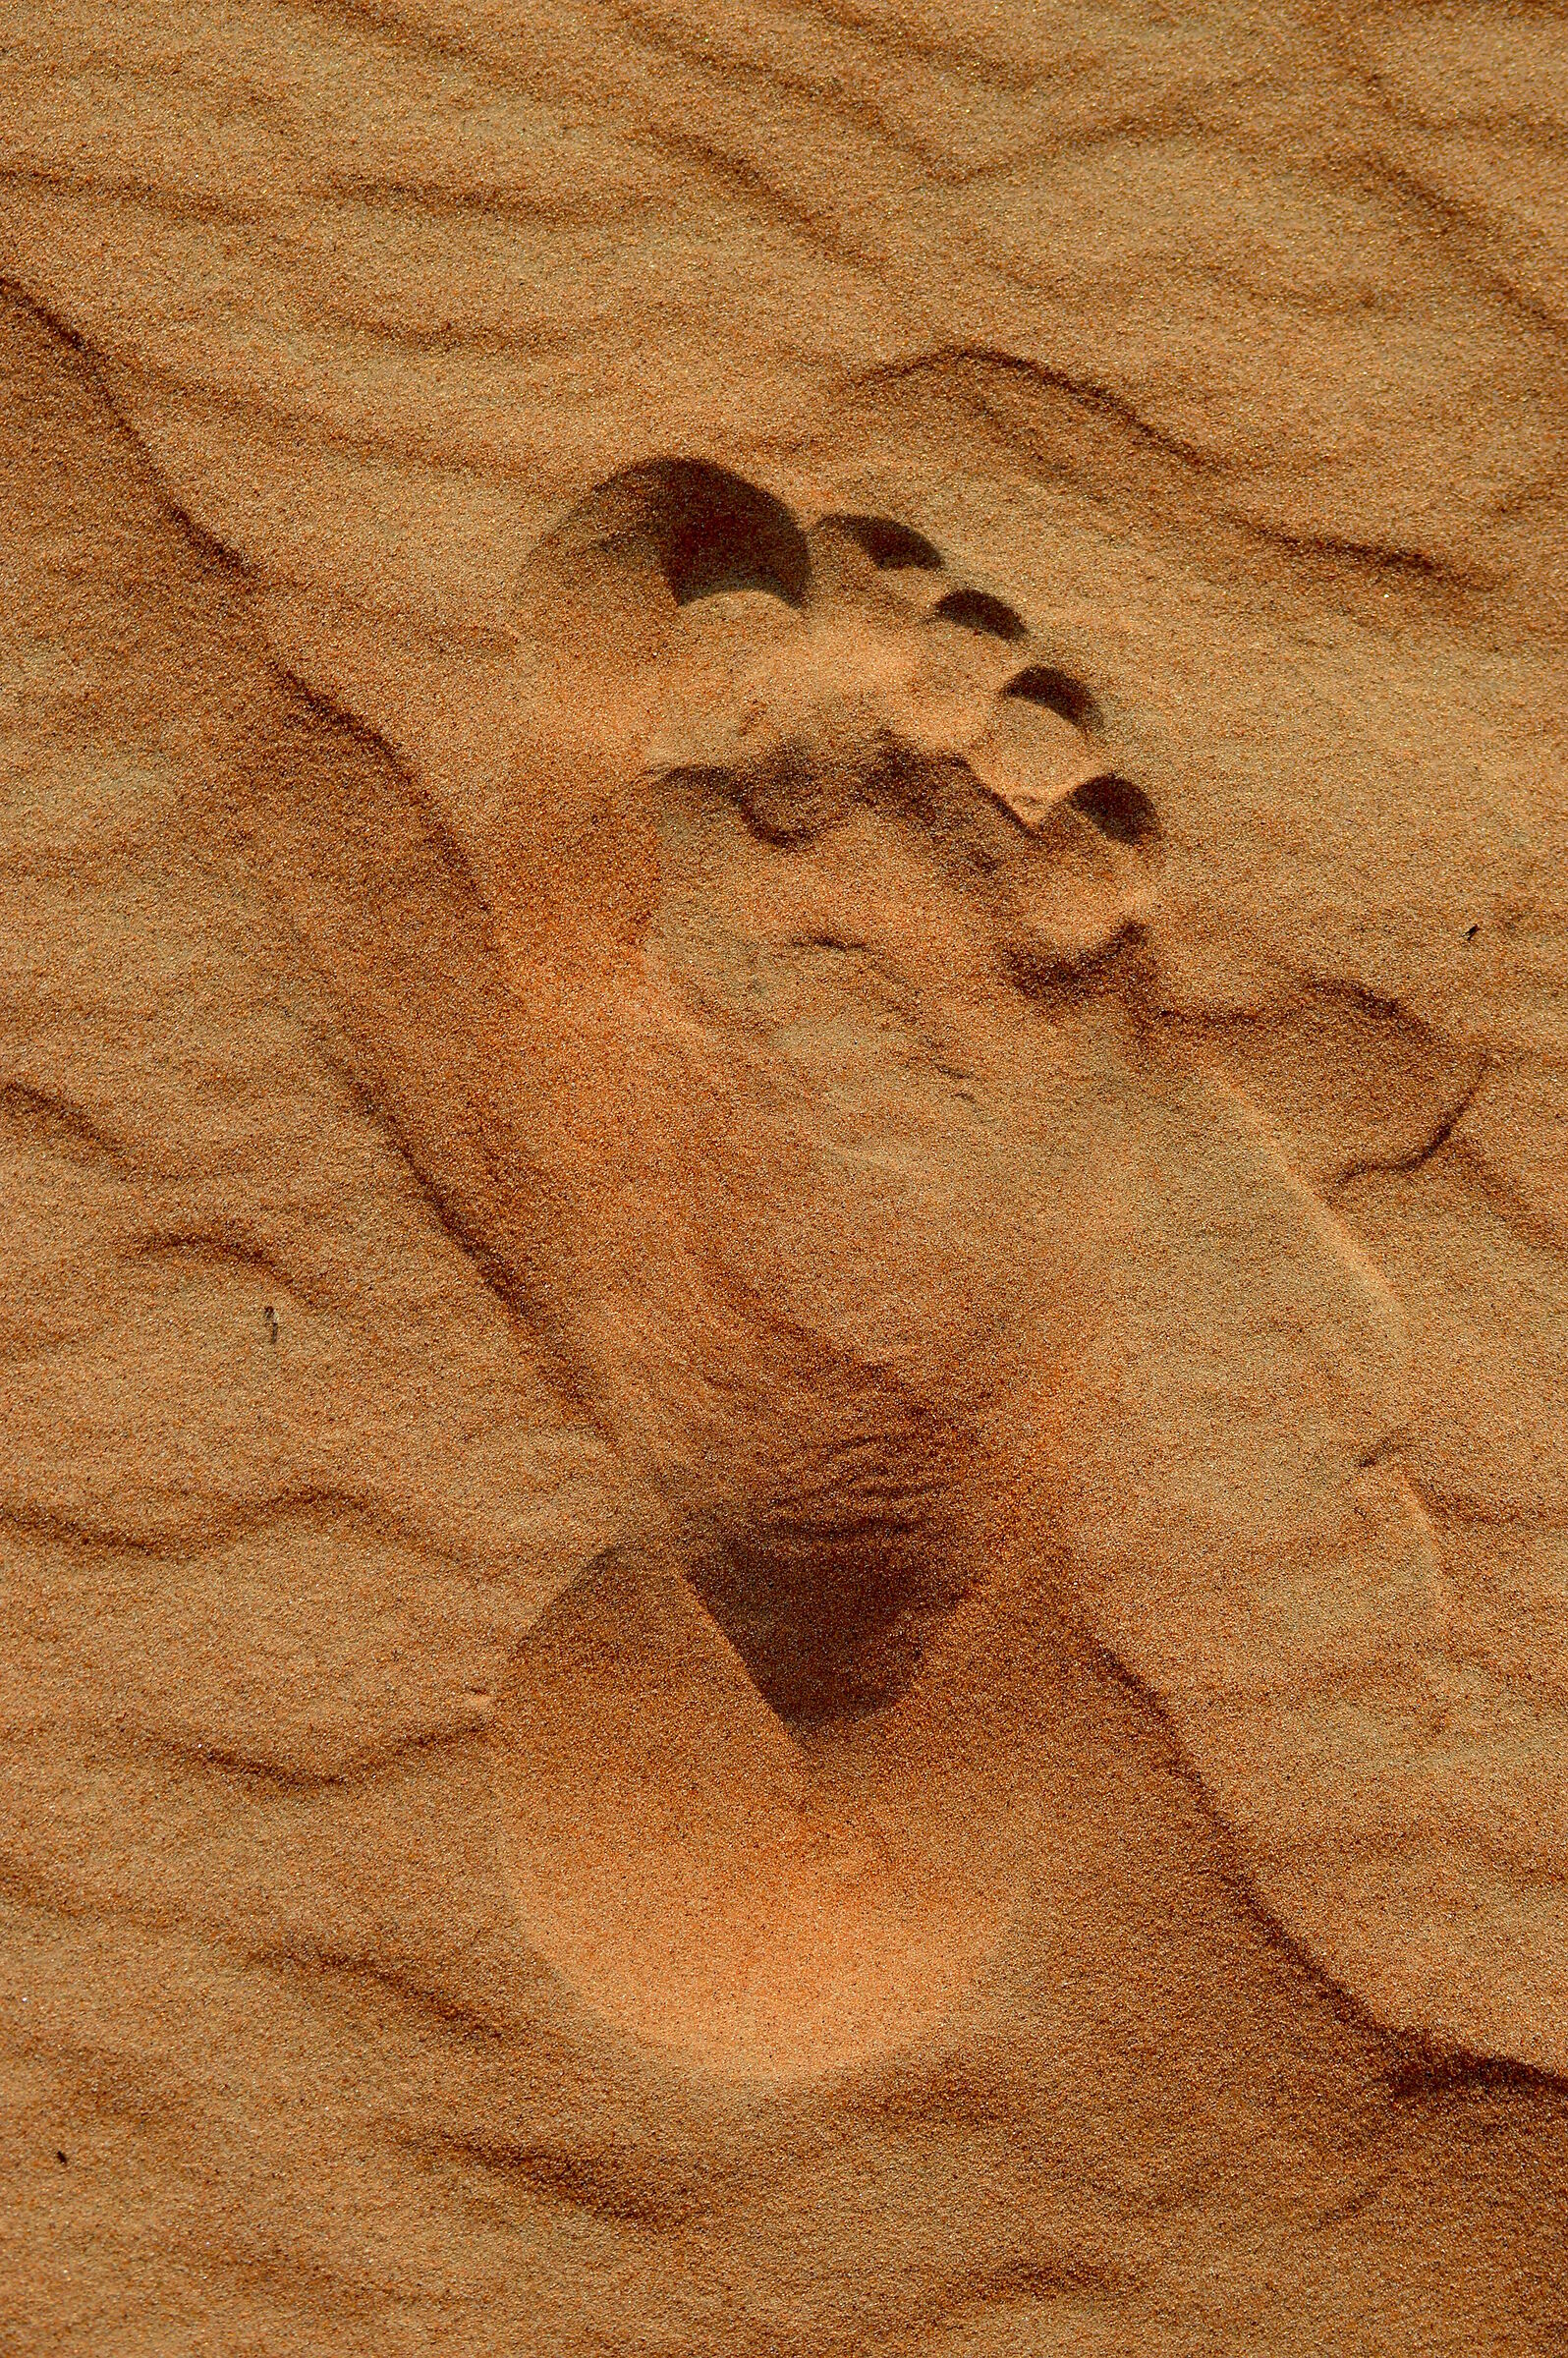 La prima impronta dell'uomo sulla duna......